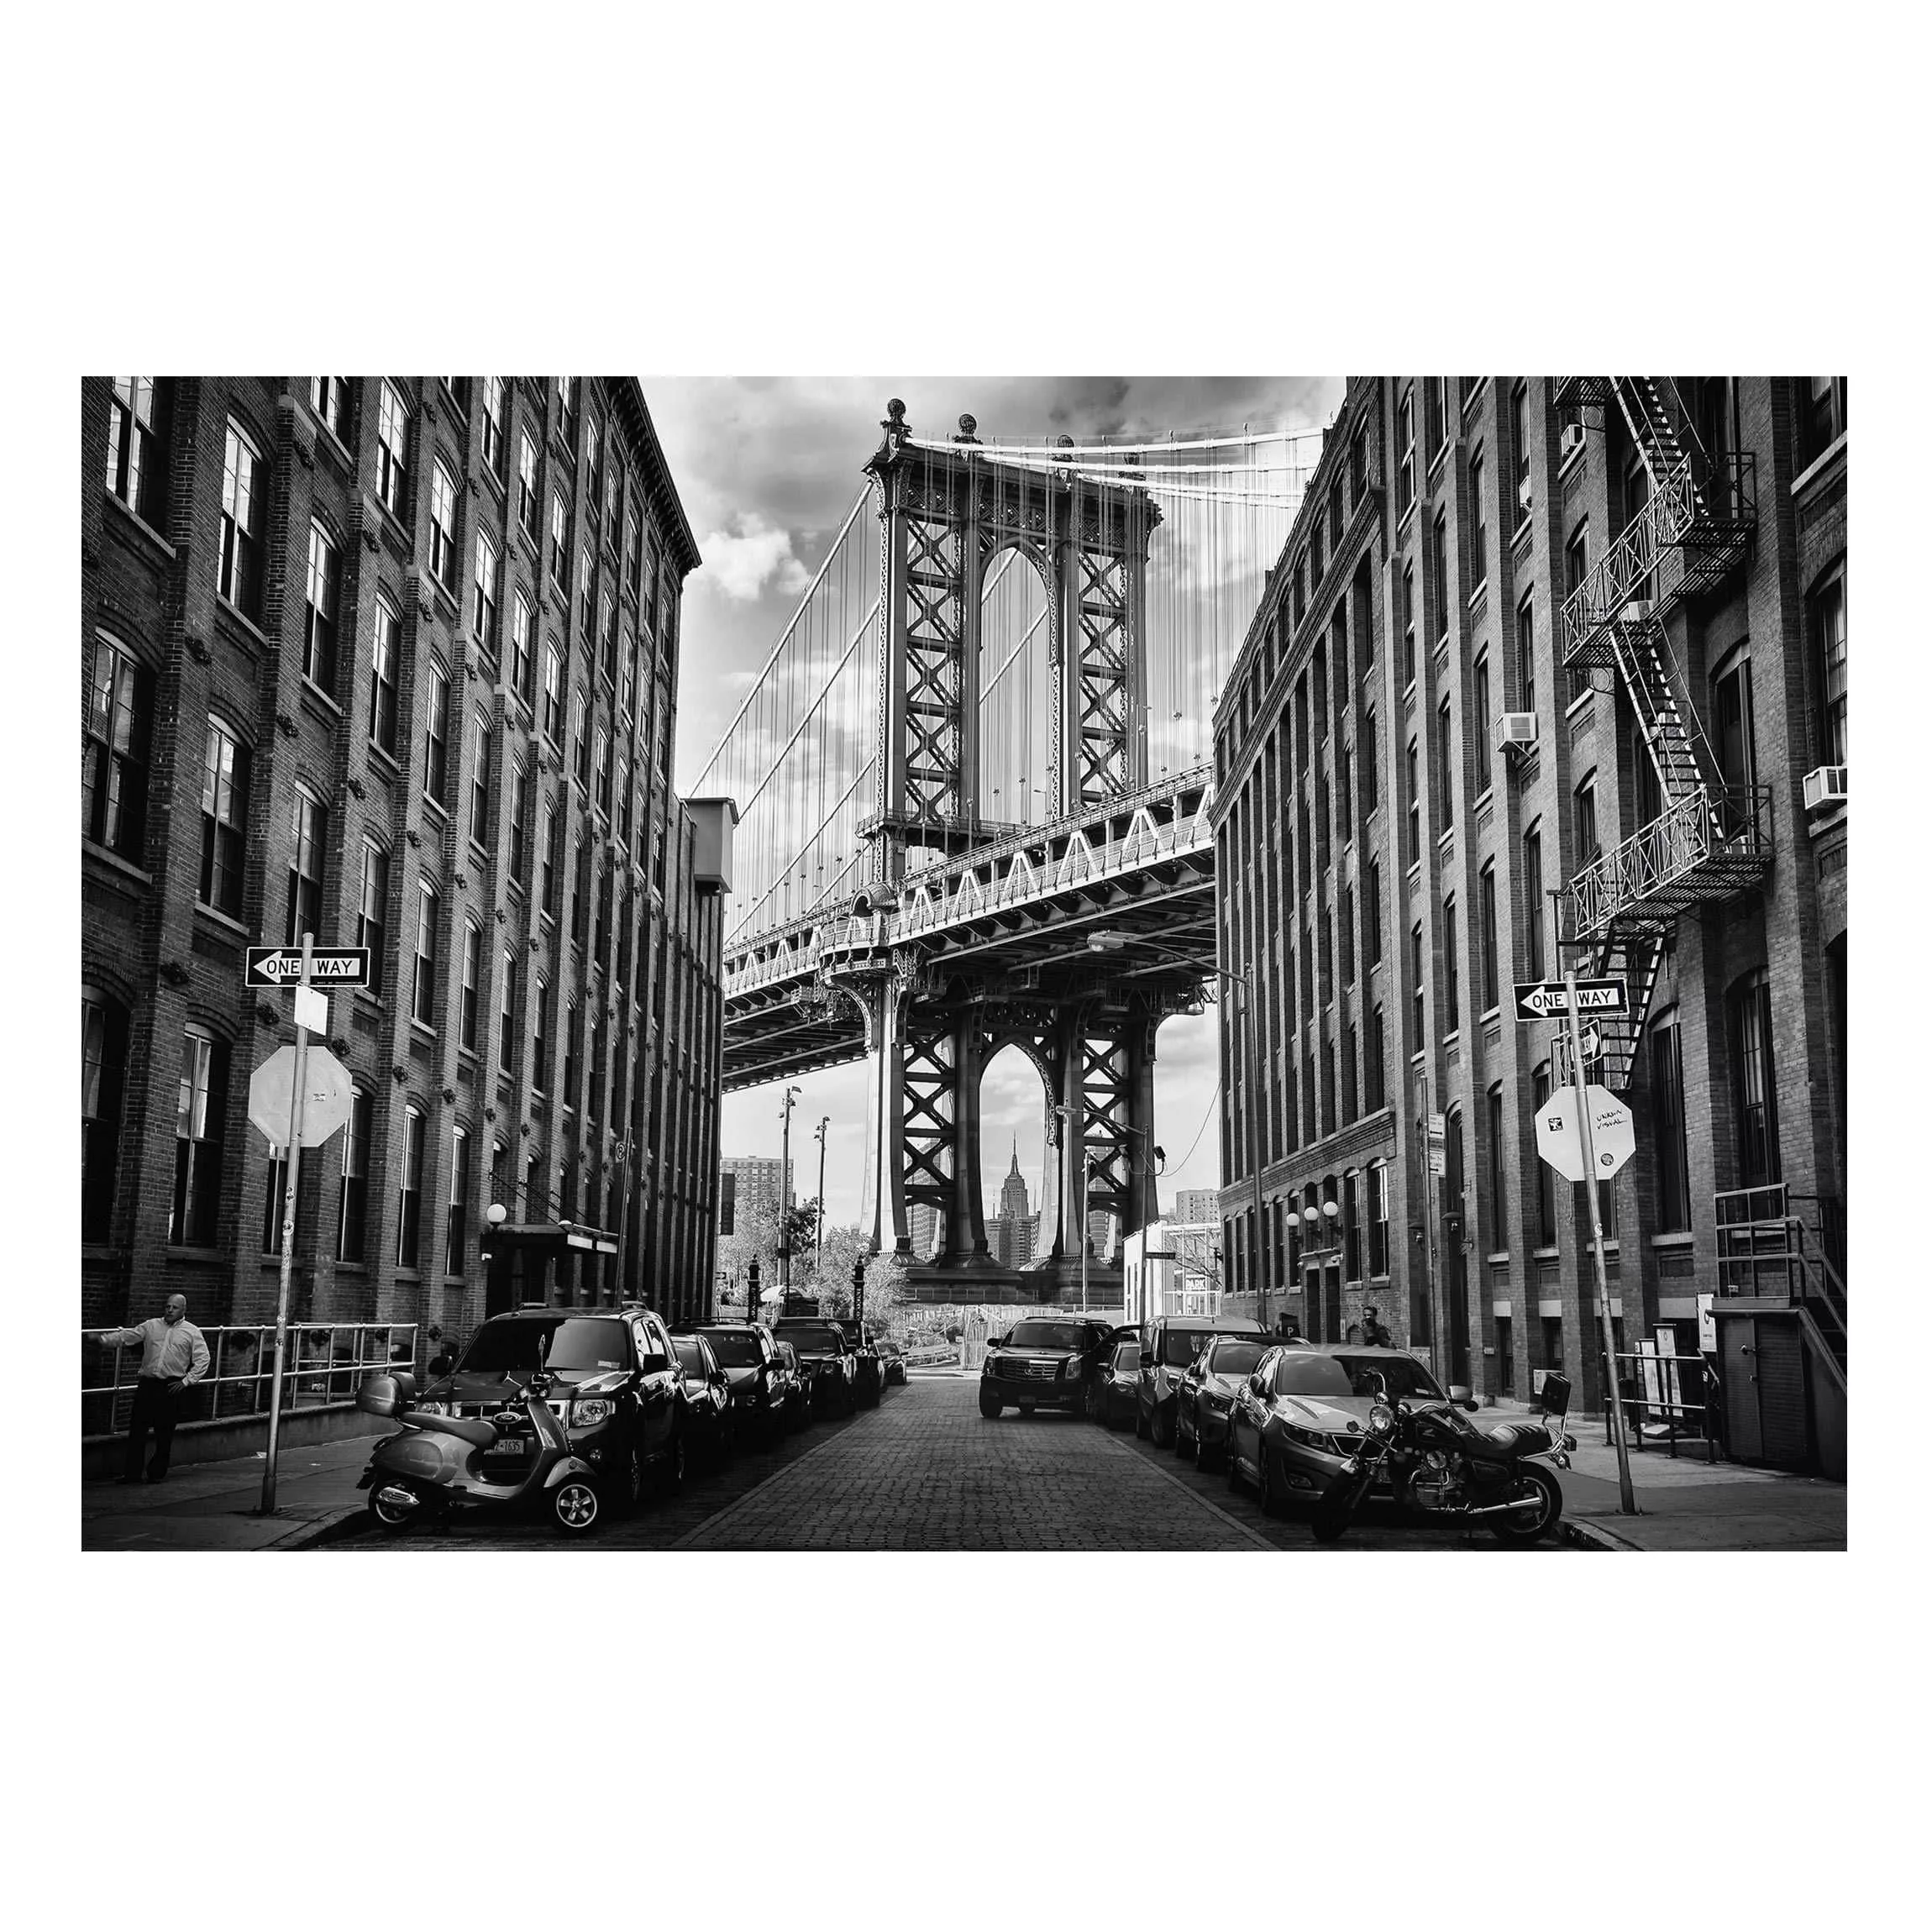 Magnettafel Architektur & Skyline - Querformat 3:2 Manhattan Bridge in Amer günstig online kaufen